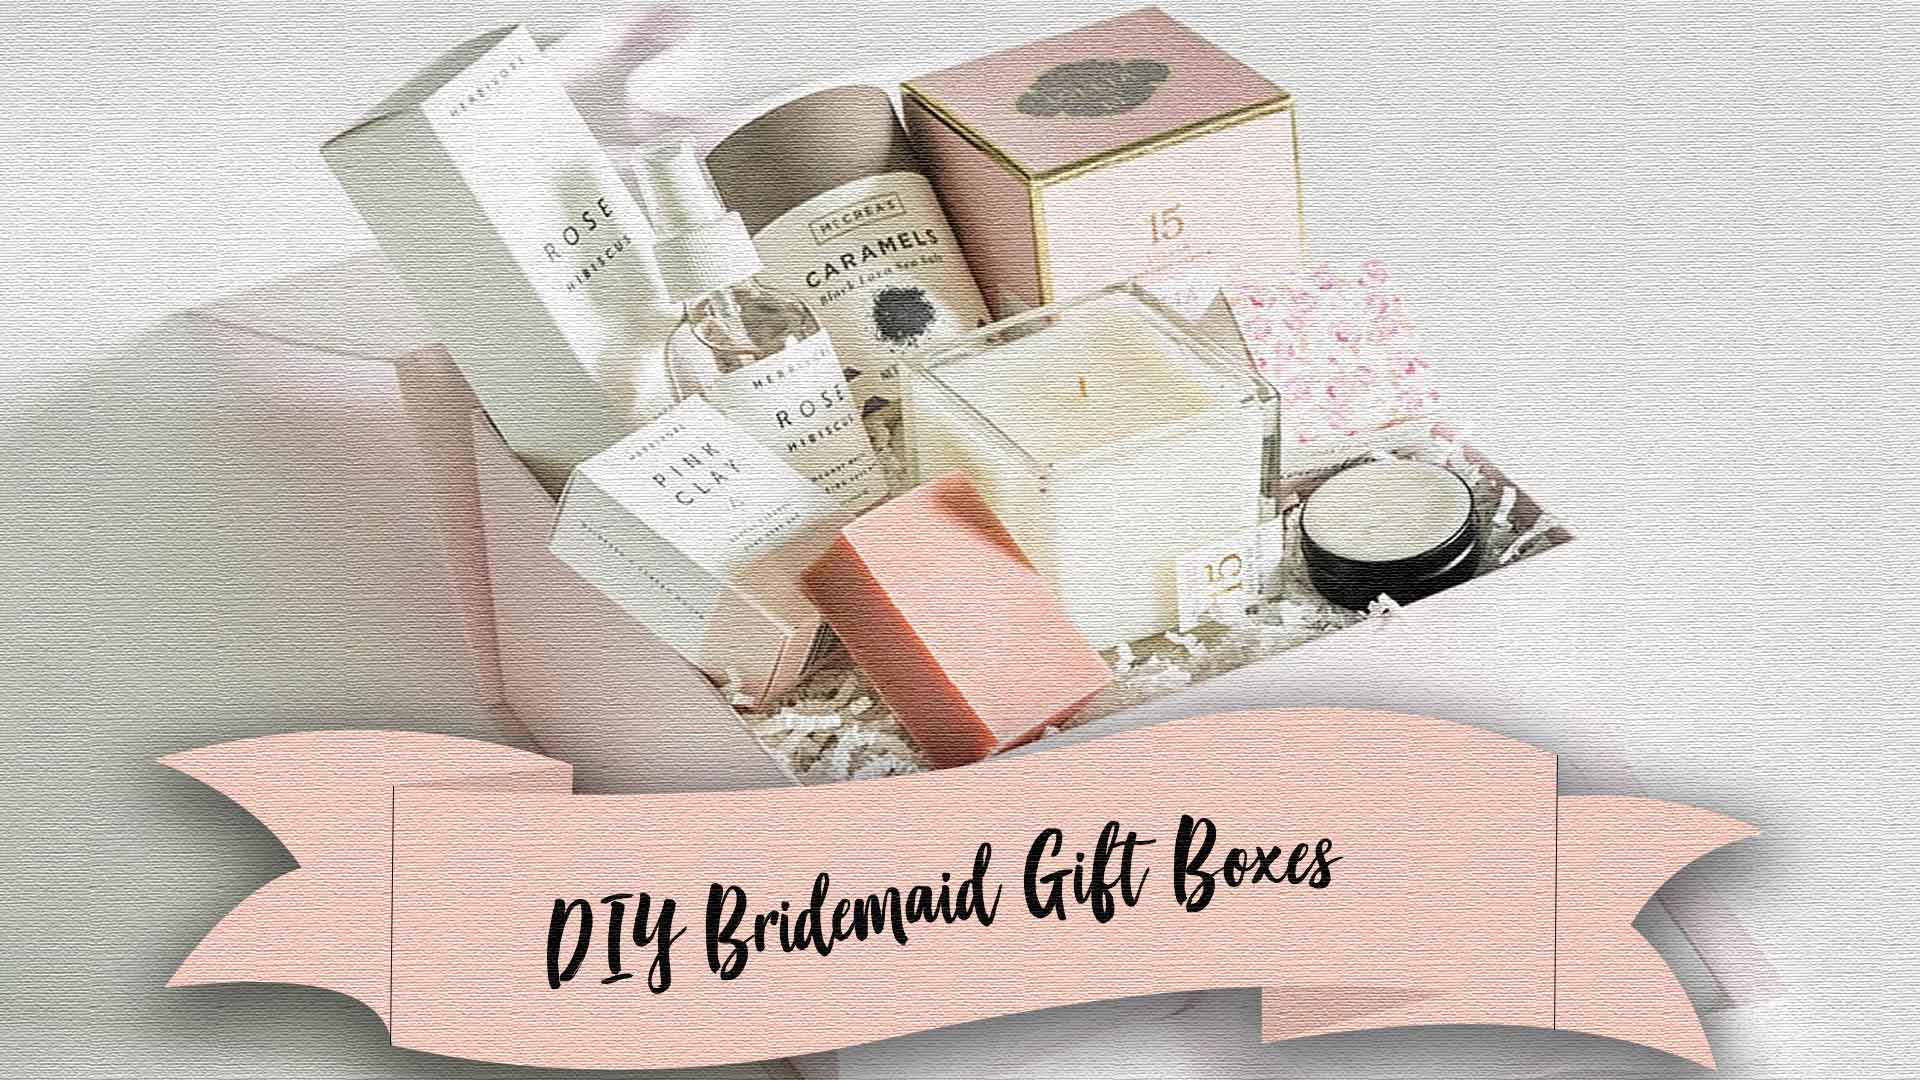 DIY Bridesmaid Gift Boxes